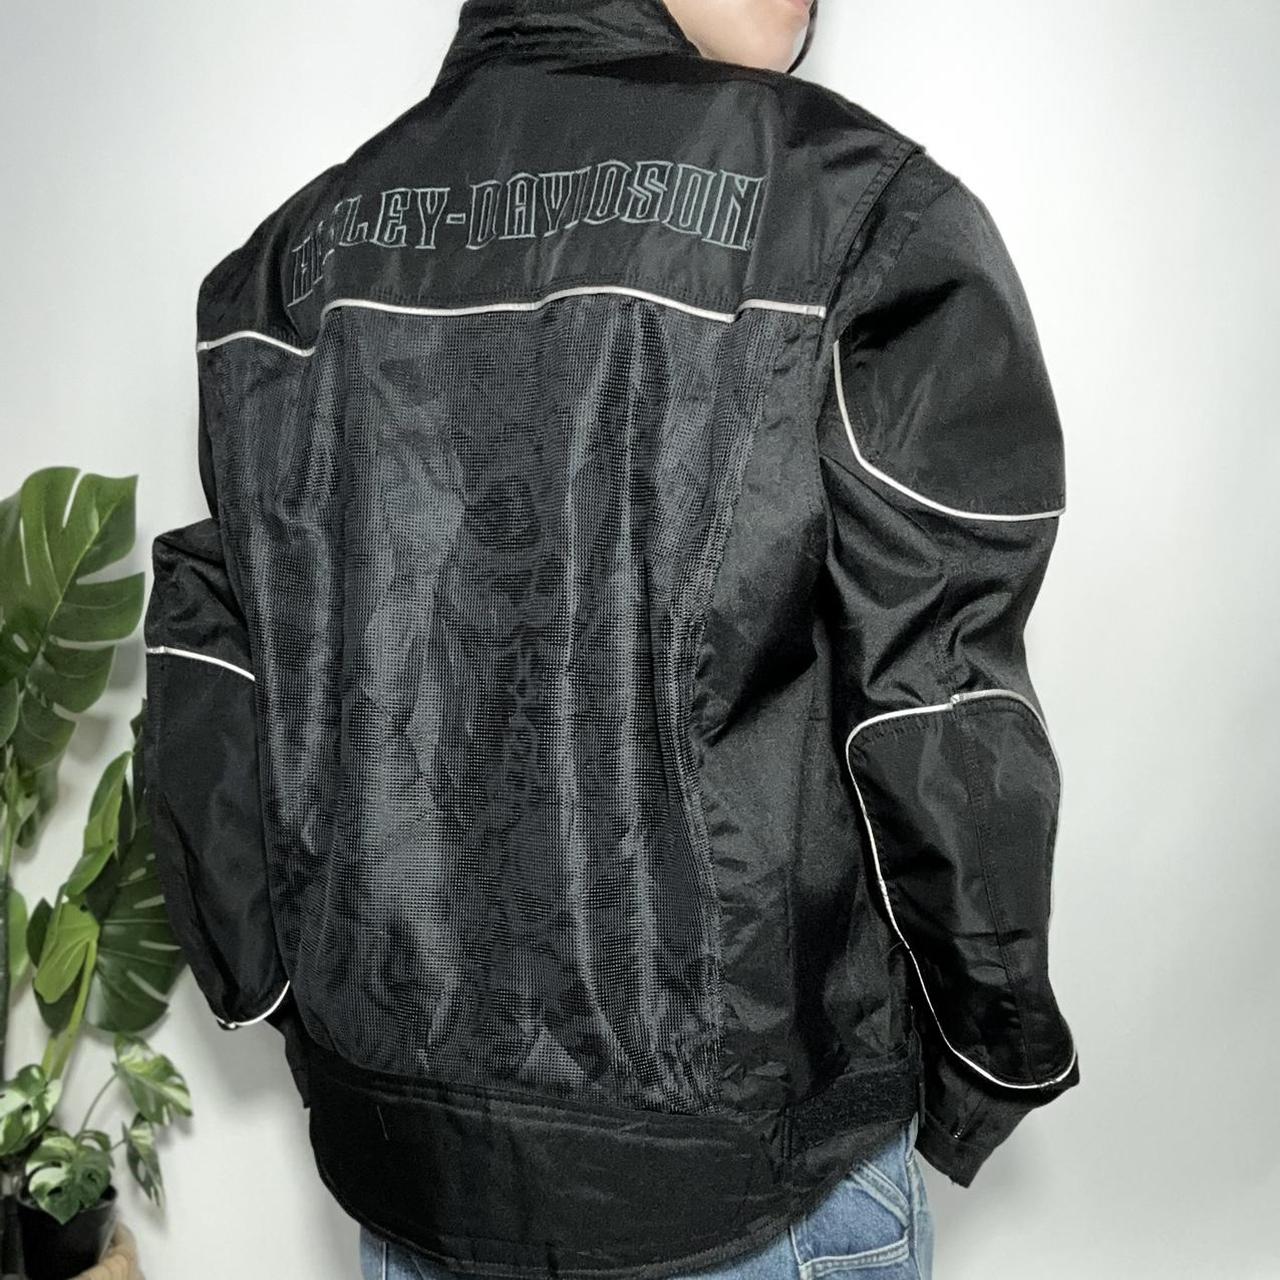 Vintage 90s Harley Davidson racing motorcycle jacket